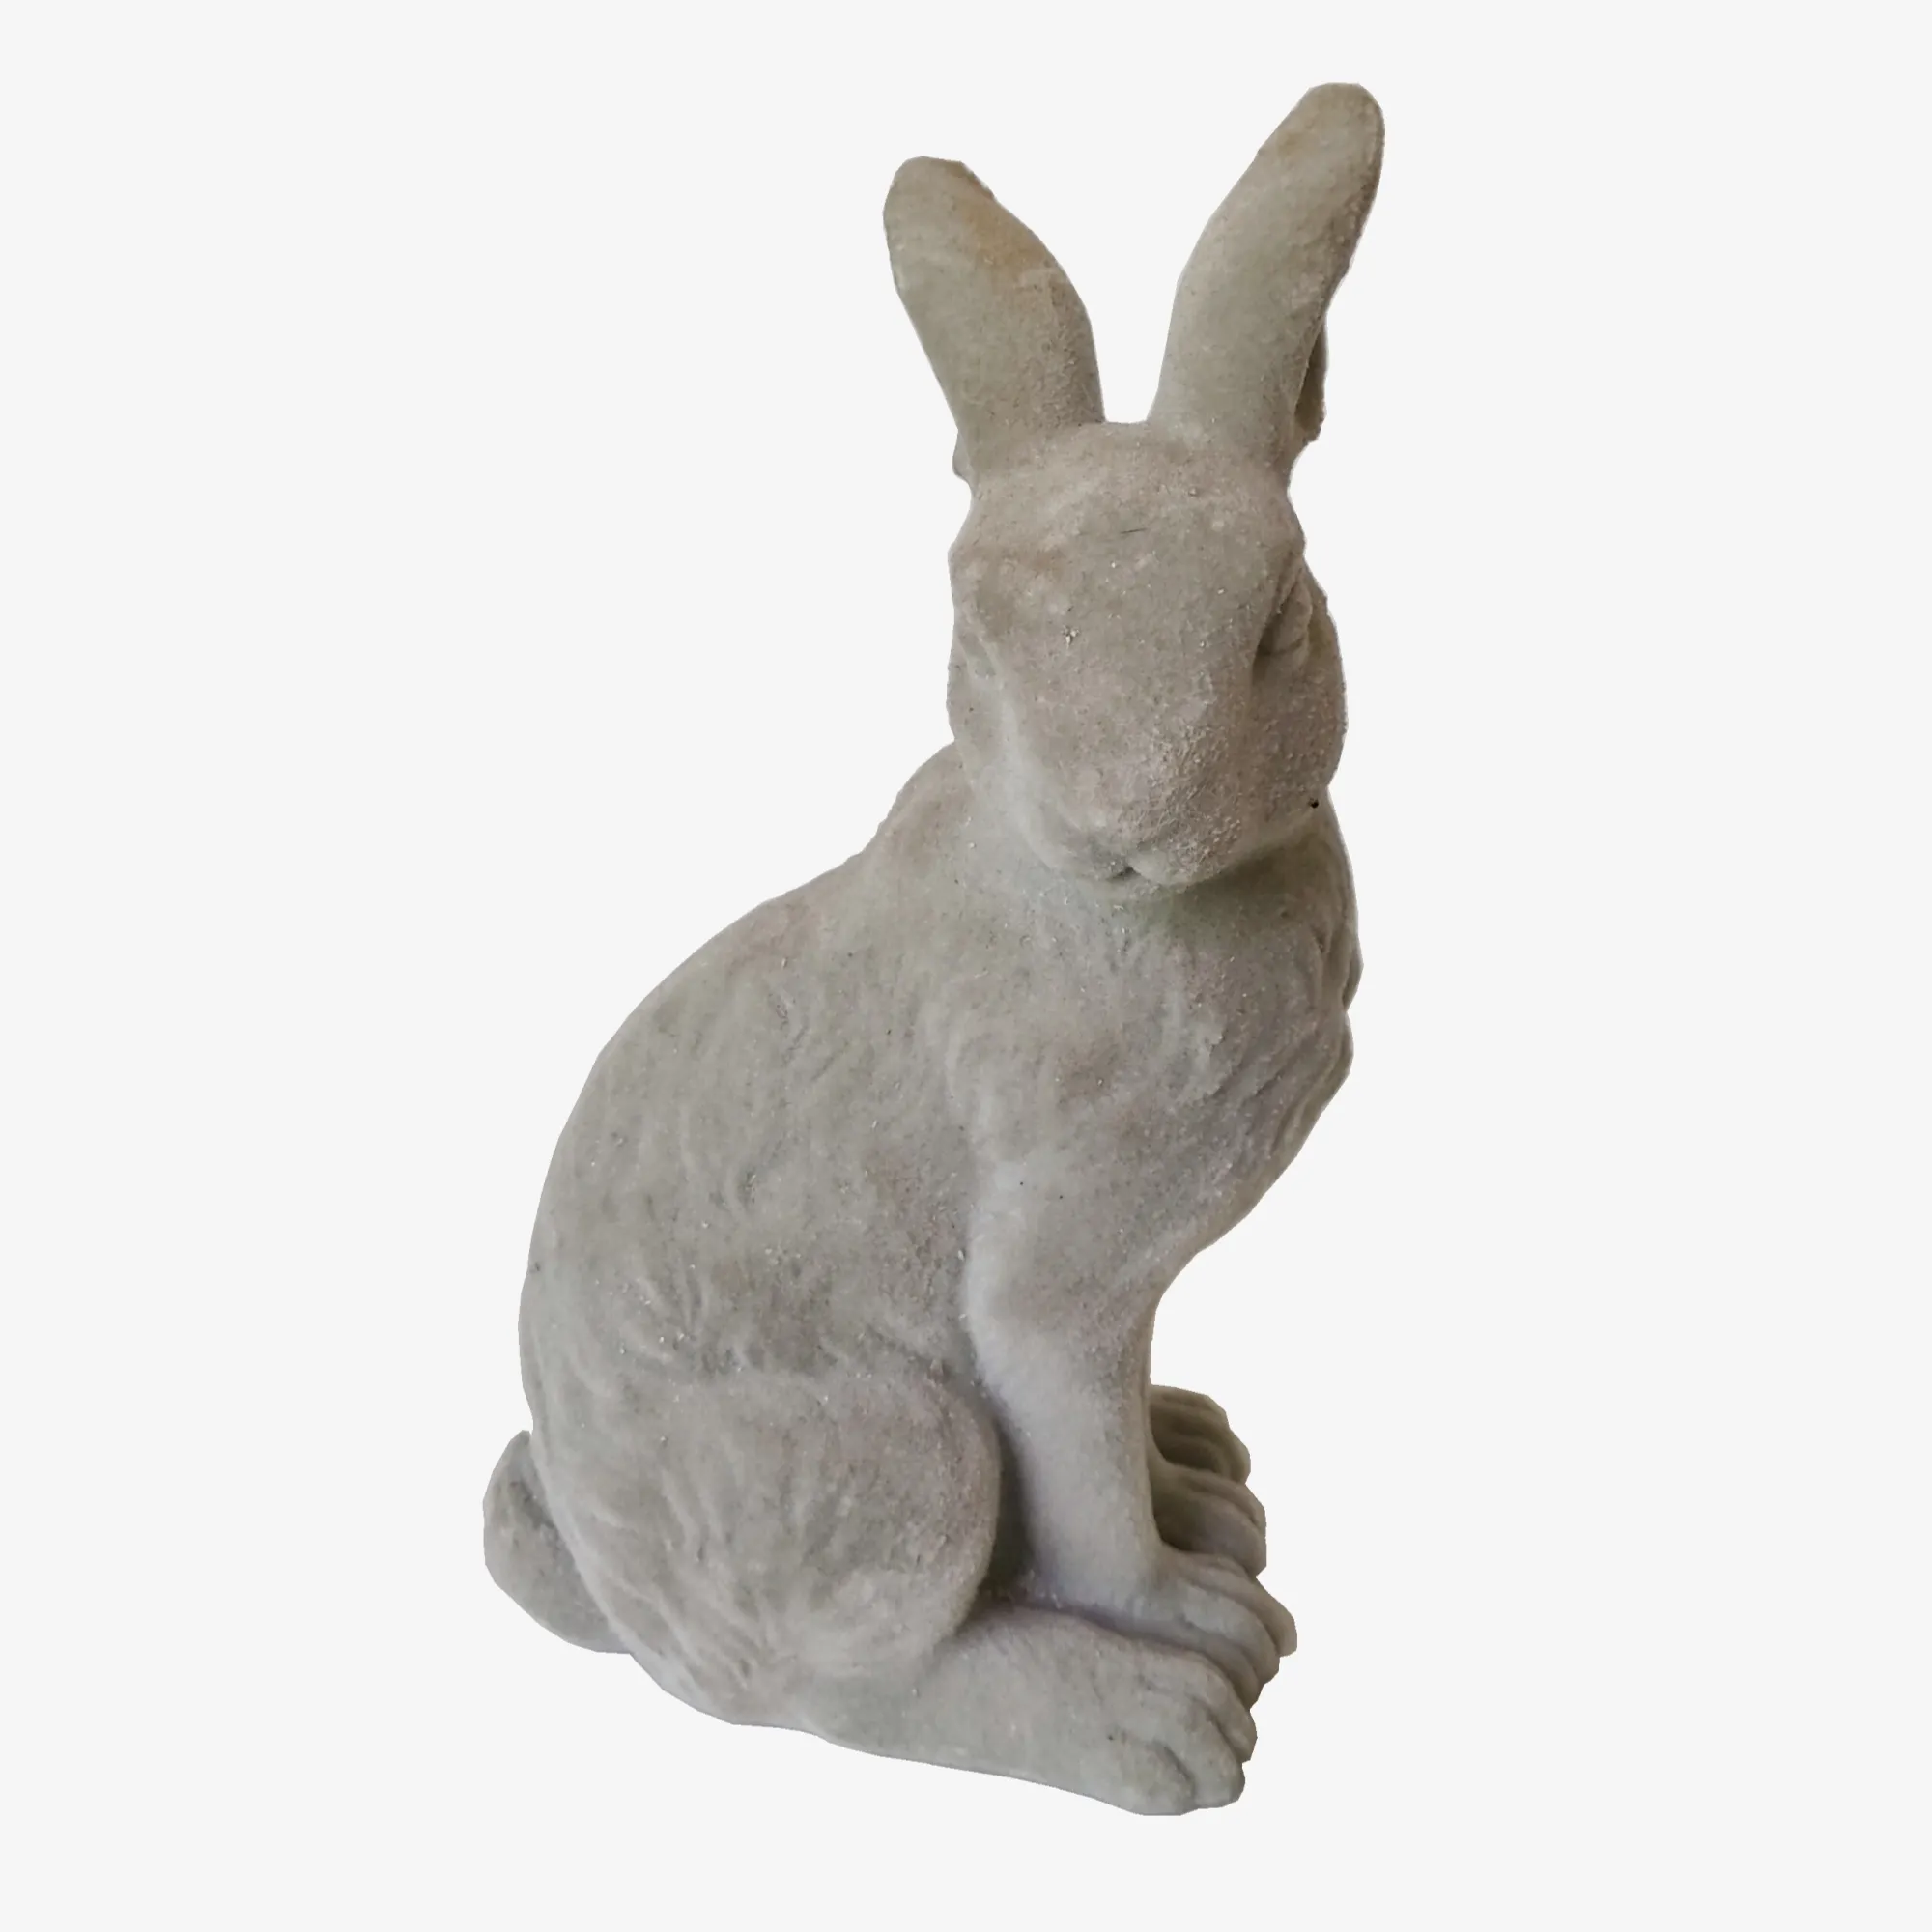 Da tavolo Polyresin Statua Del Coniglio Decorazione di Pasqua Grigio Floccato Resina Seduta Coniglio Figurine